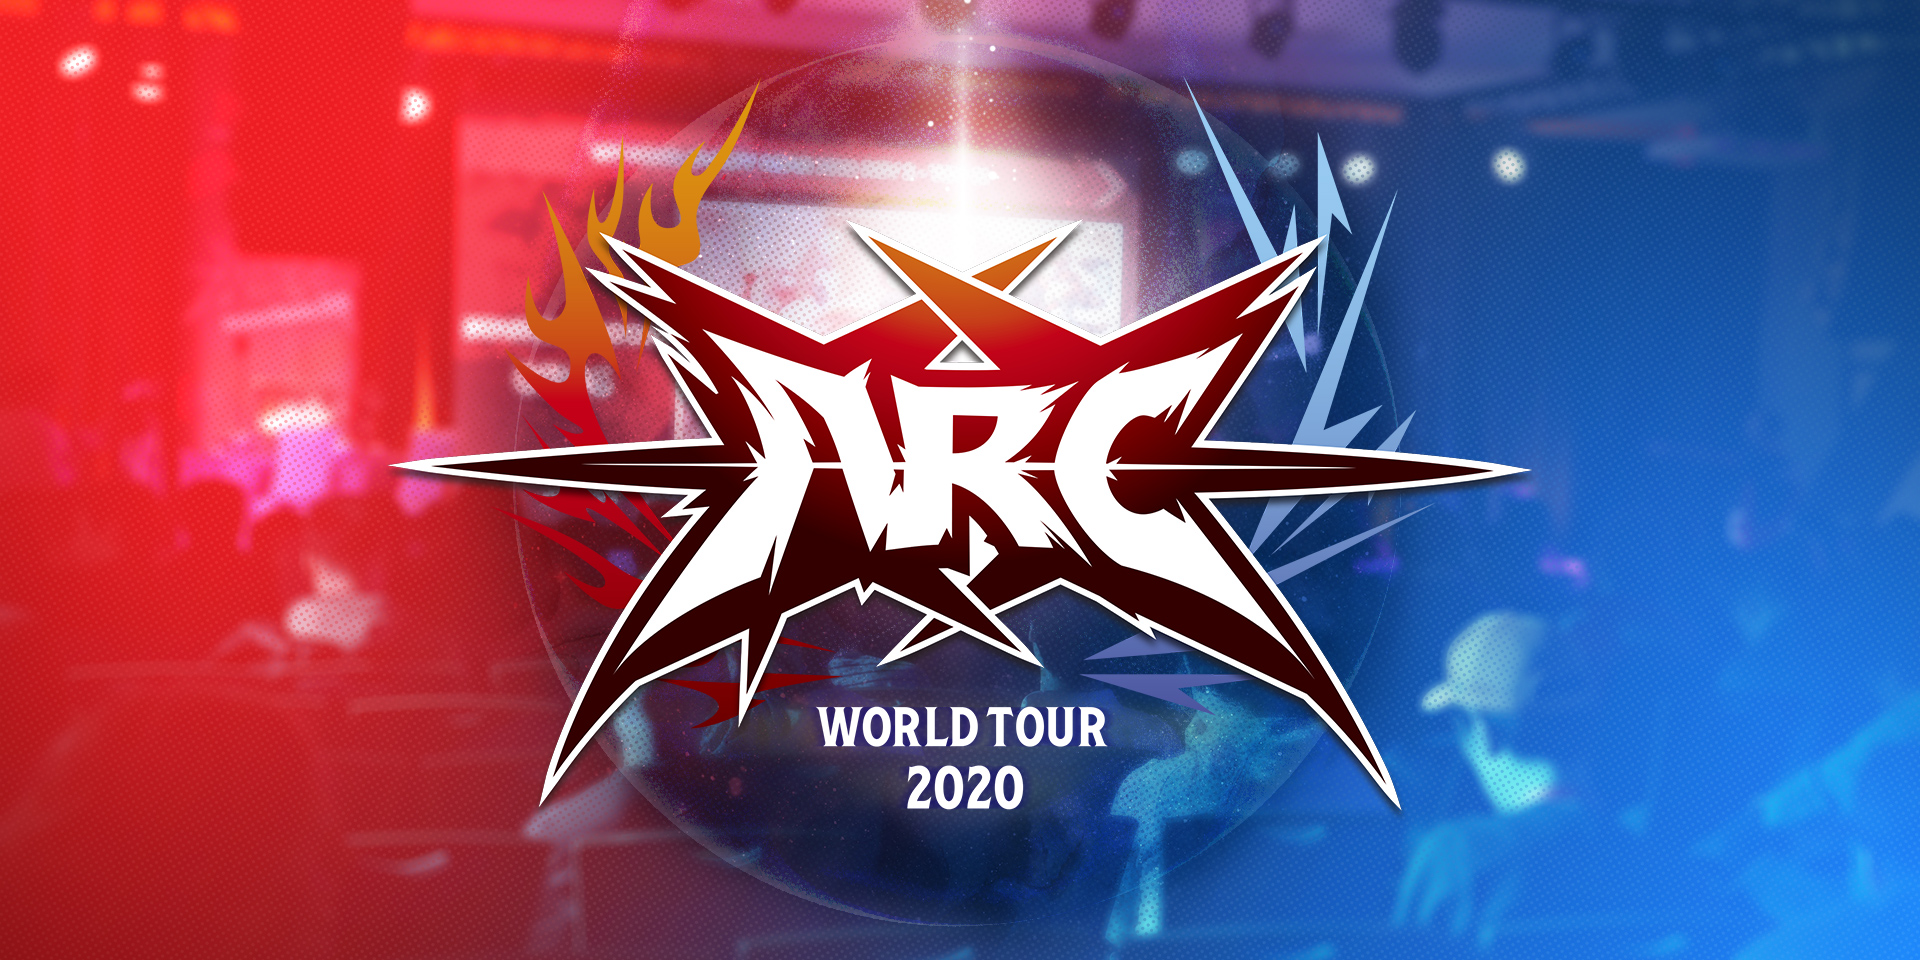 受新冠病毒疫情影响 Arc世界巡回赛2020已经被取消